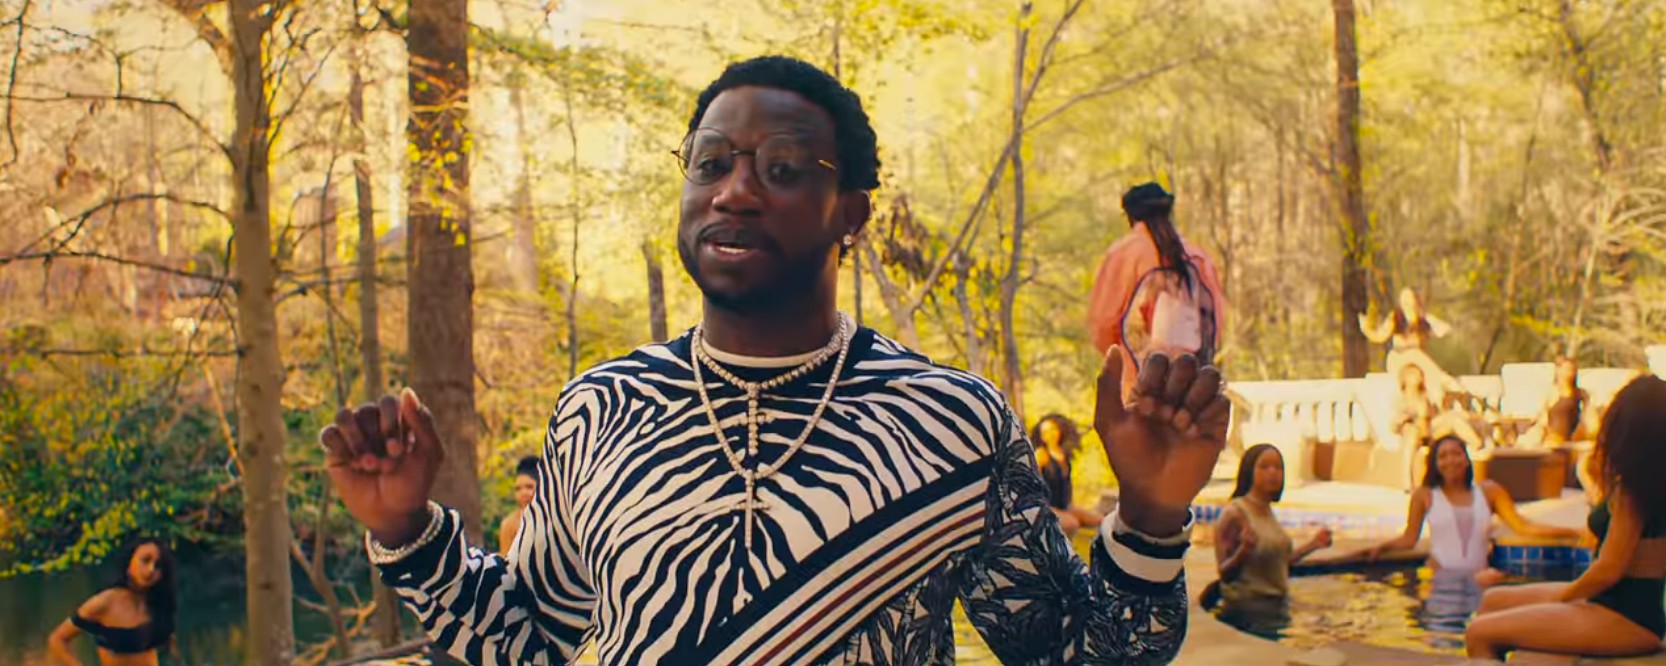 Comorama Adaptive beam Gucci Mane Announces New Album, Releases Migos-Featuring "I Get the Bag"